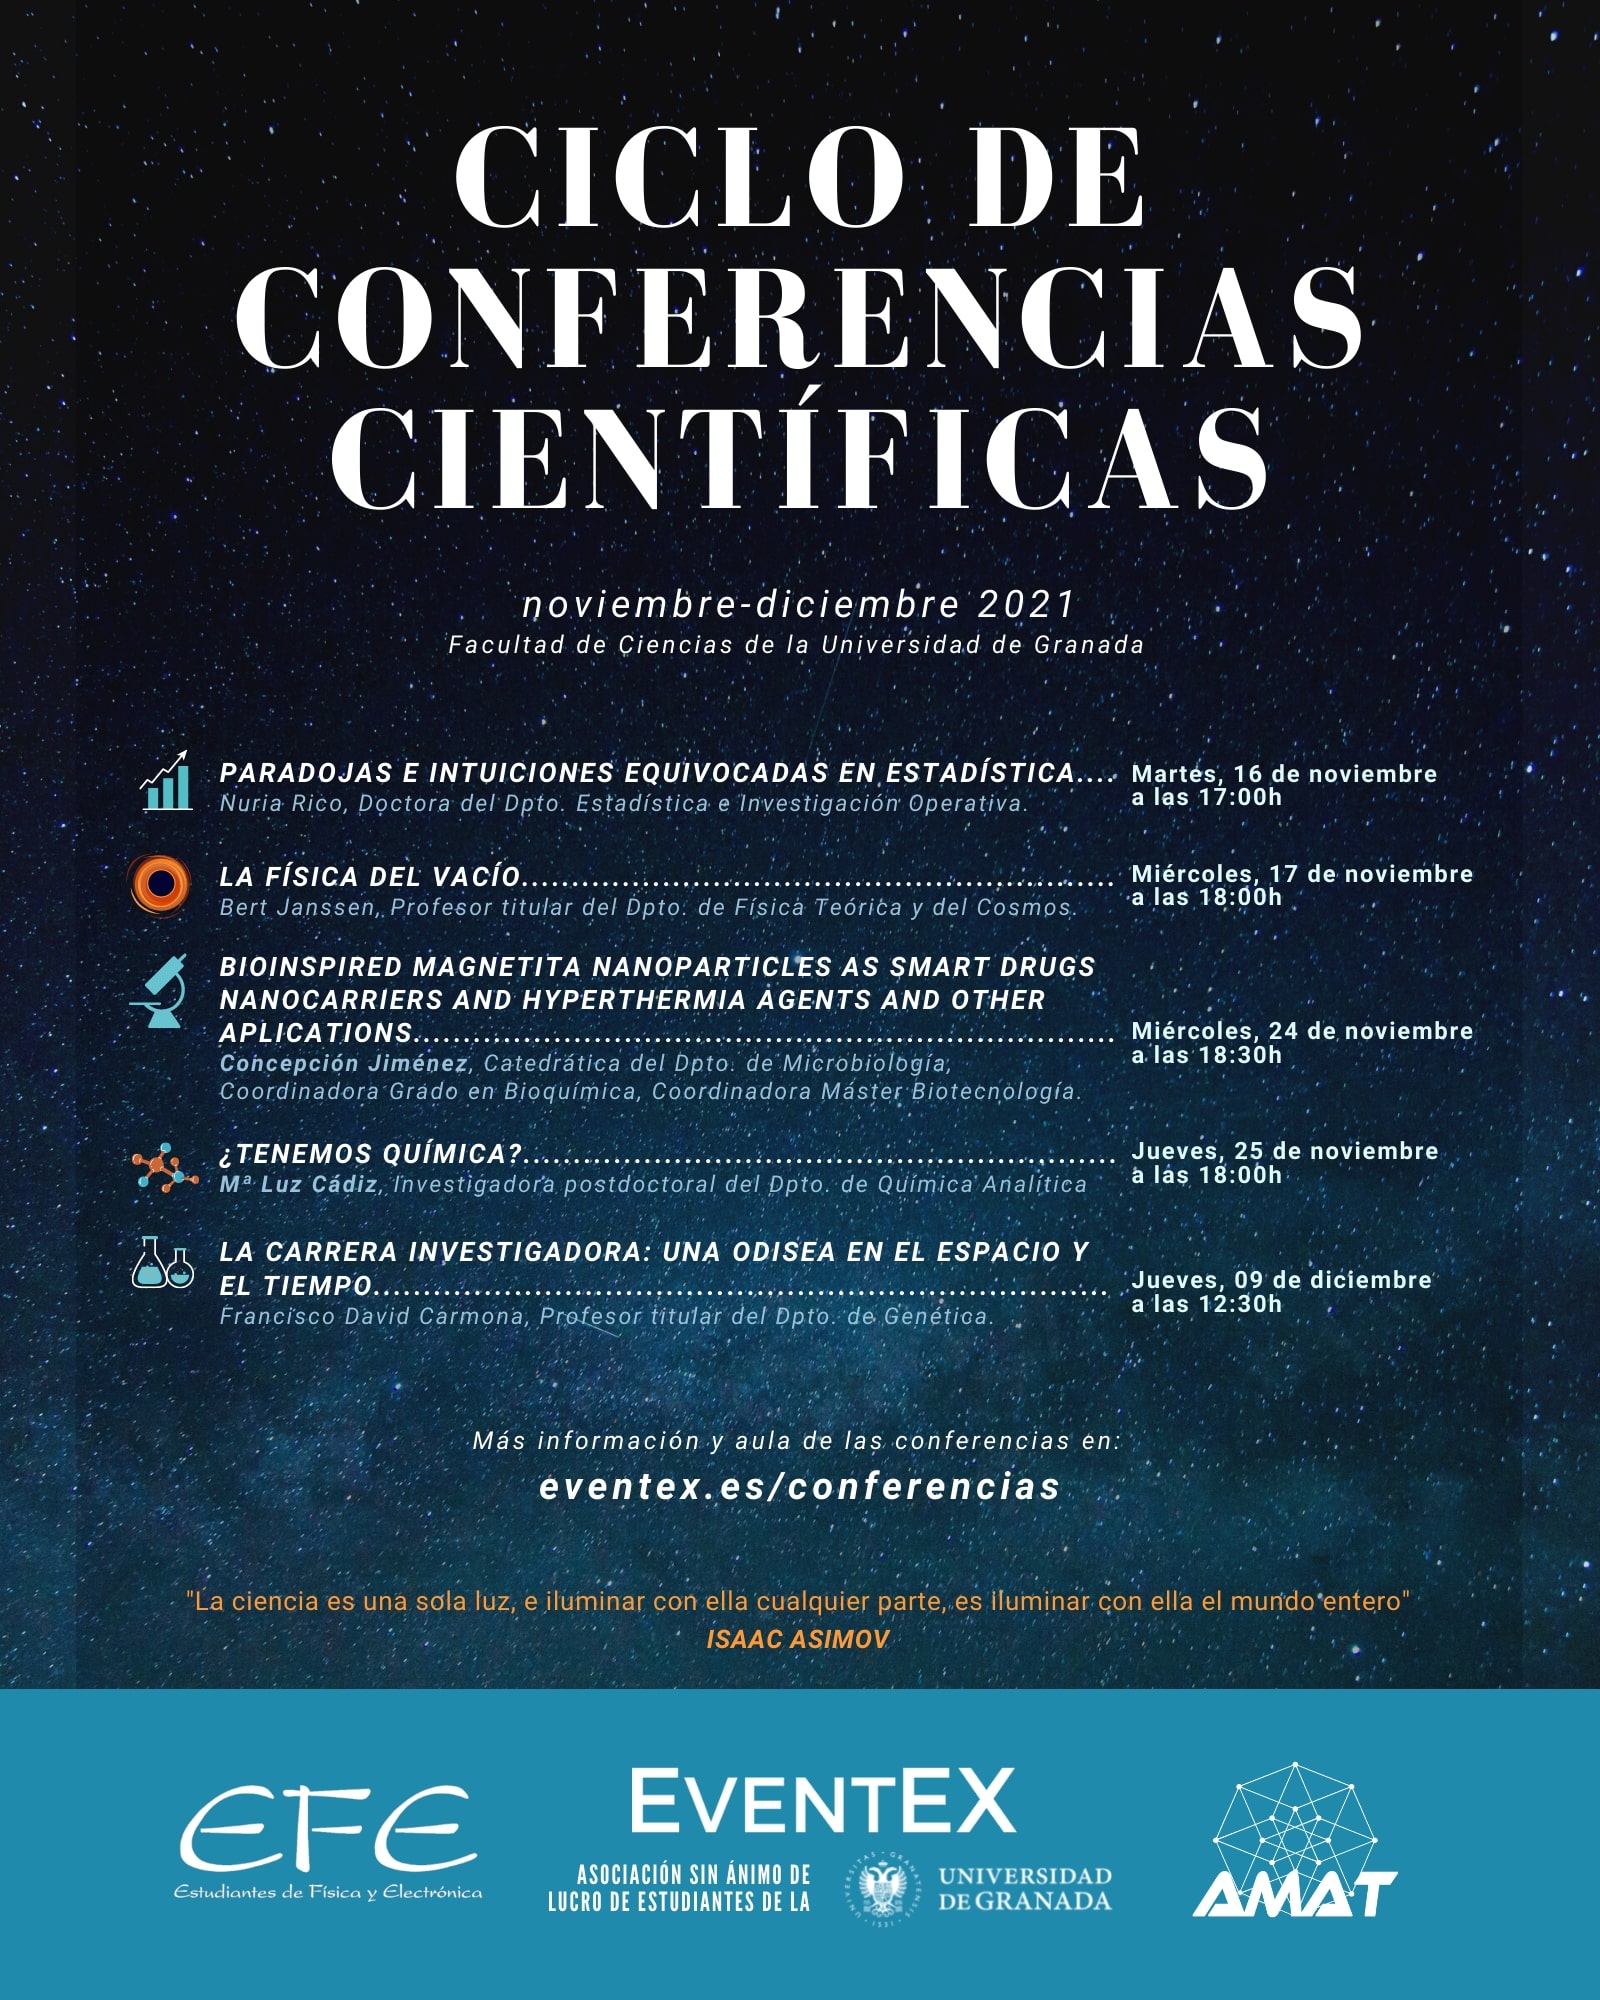 Ciclo de Conferencias Científicas EventEX